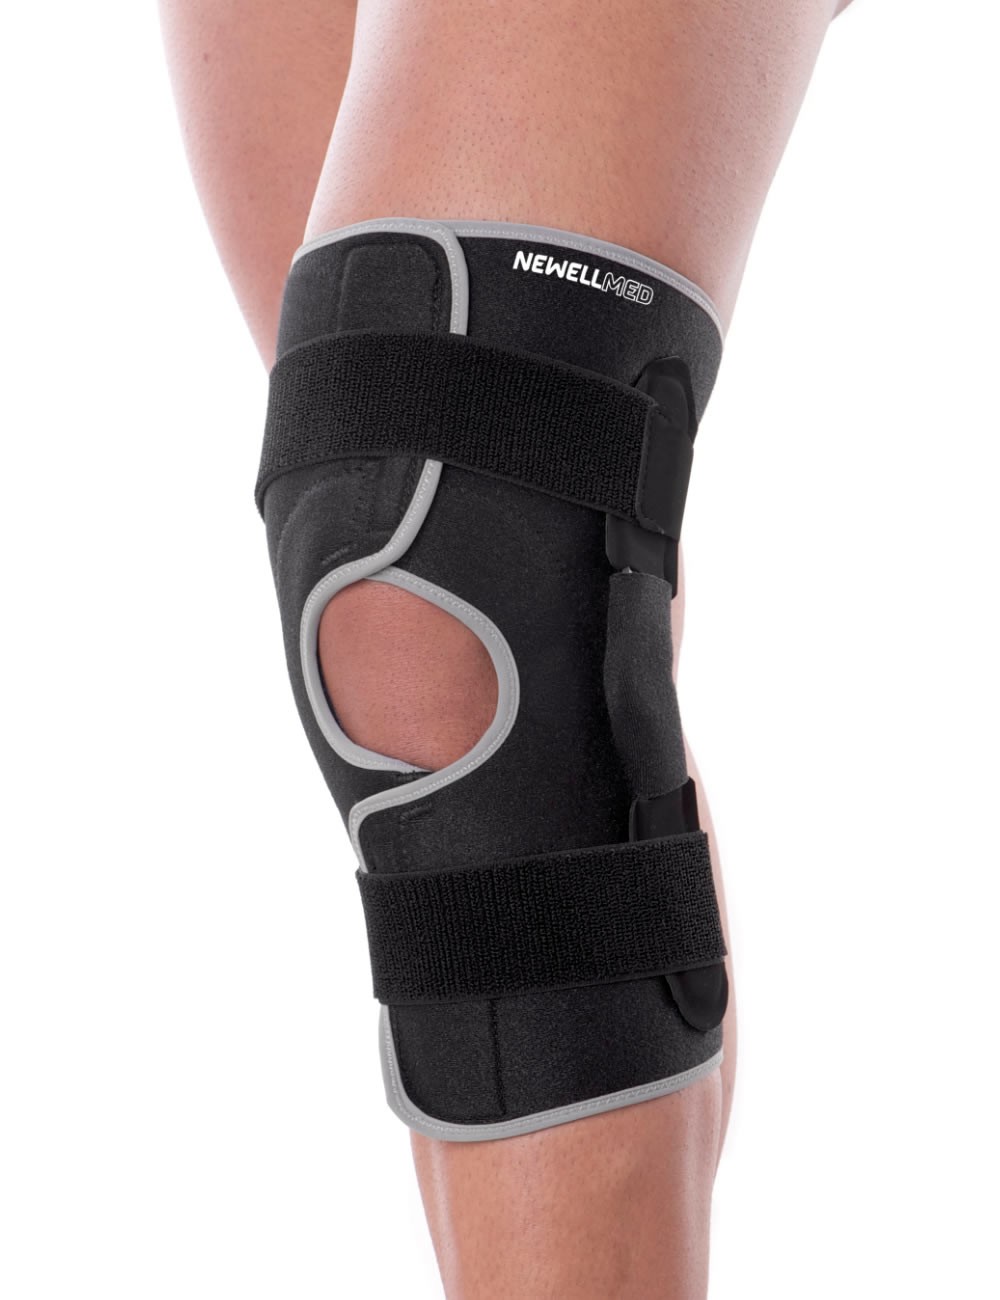 PK34 - Open knee brace